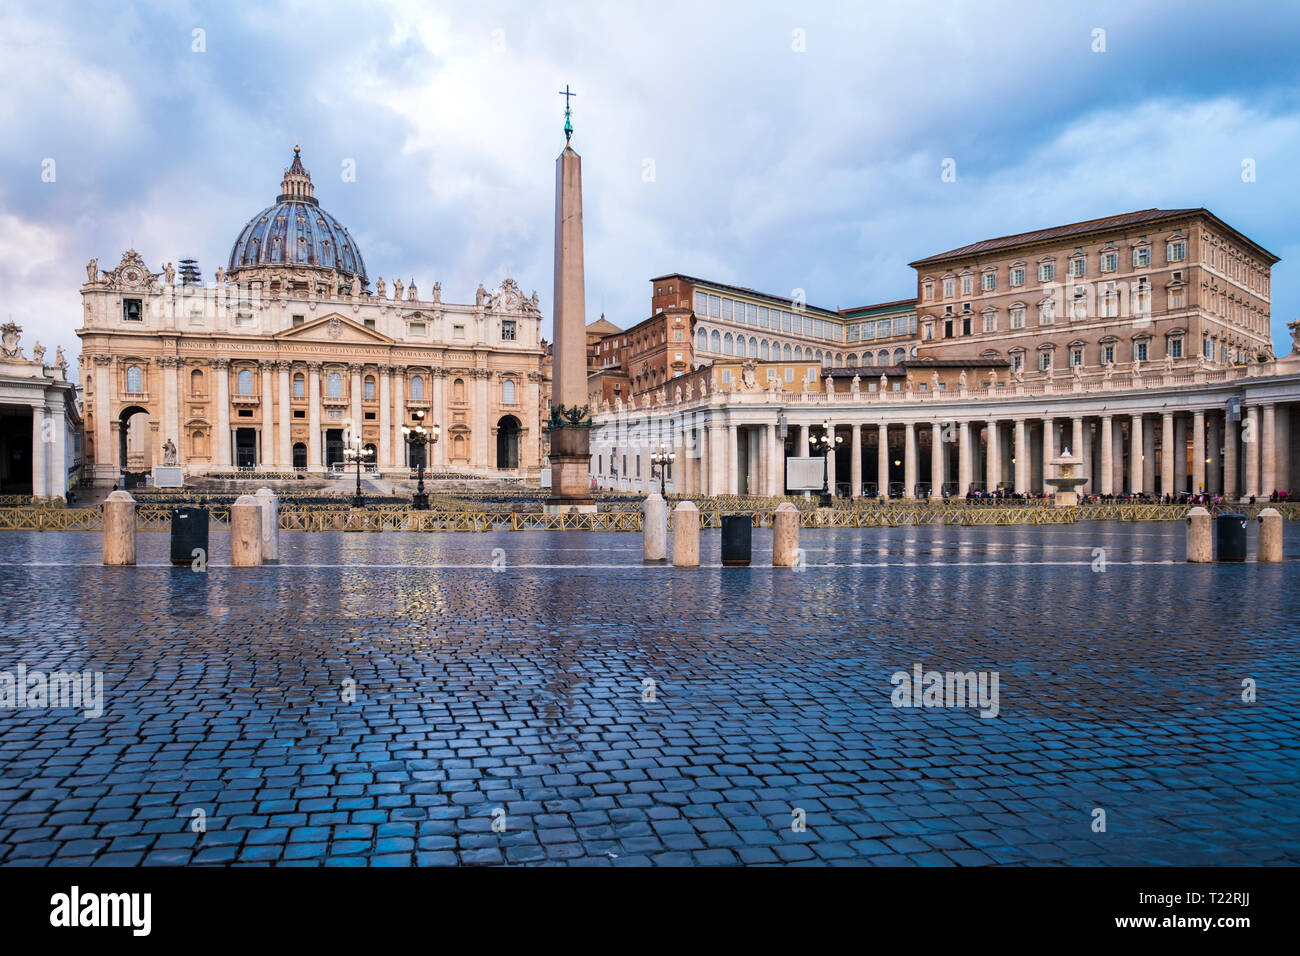 Italie, Rome, vue de la Basilique Saint Pierre et la place Saint Pierre au Vatican Banque D'Images